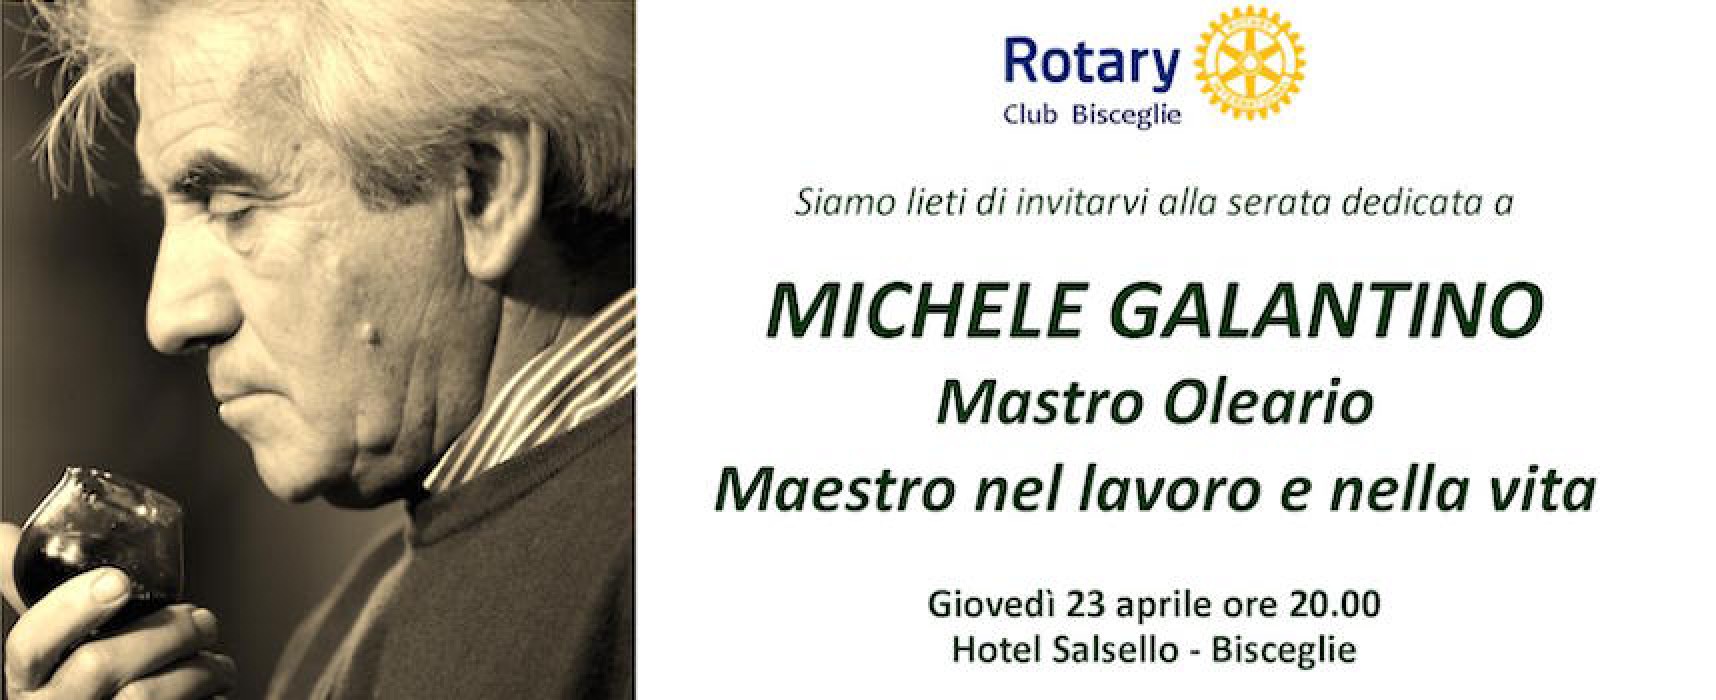 Il Rotary Club ricorda Michele Galantino presso l’Hotel Salsello